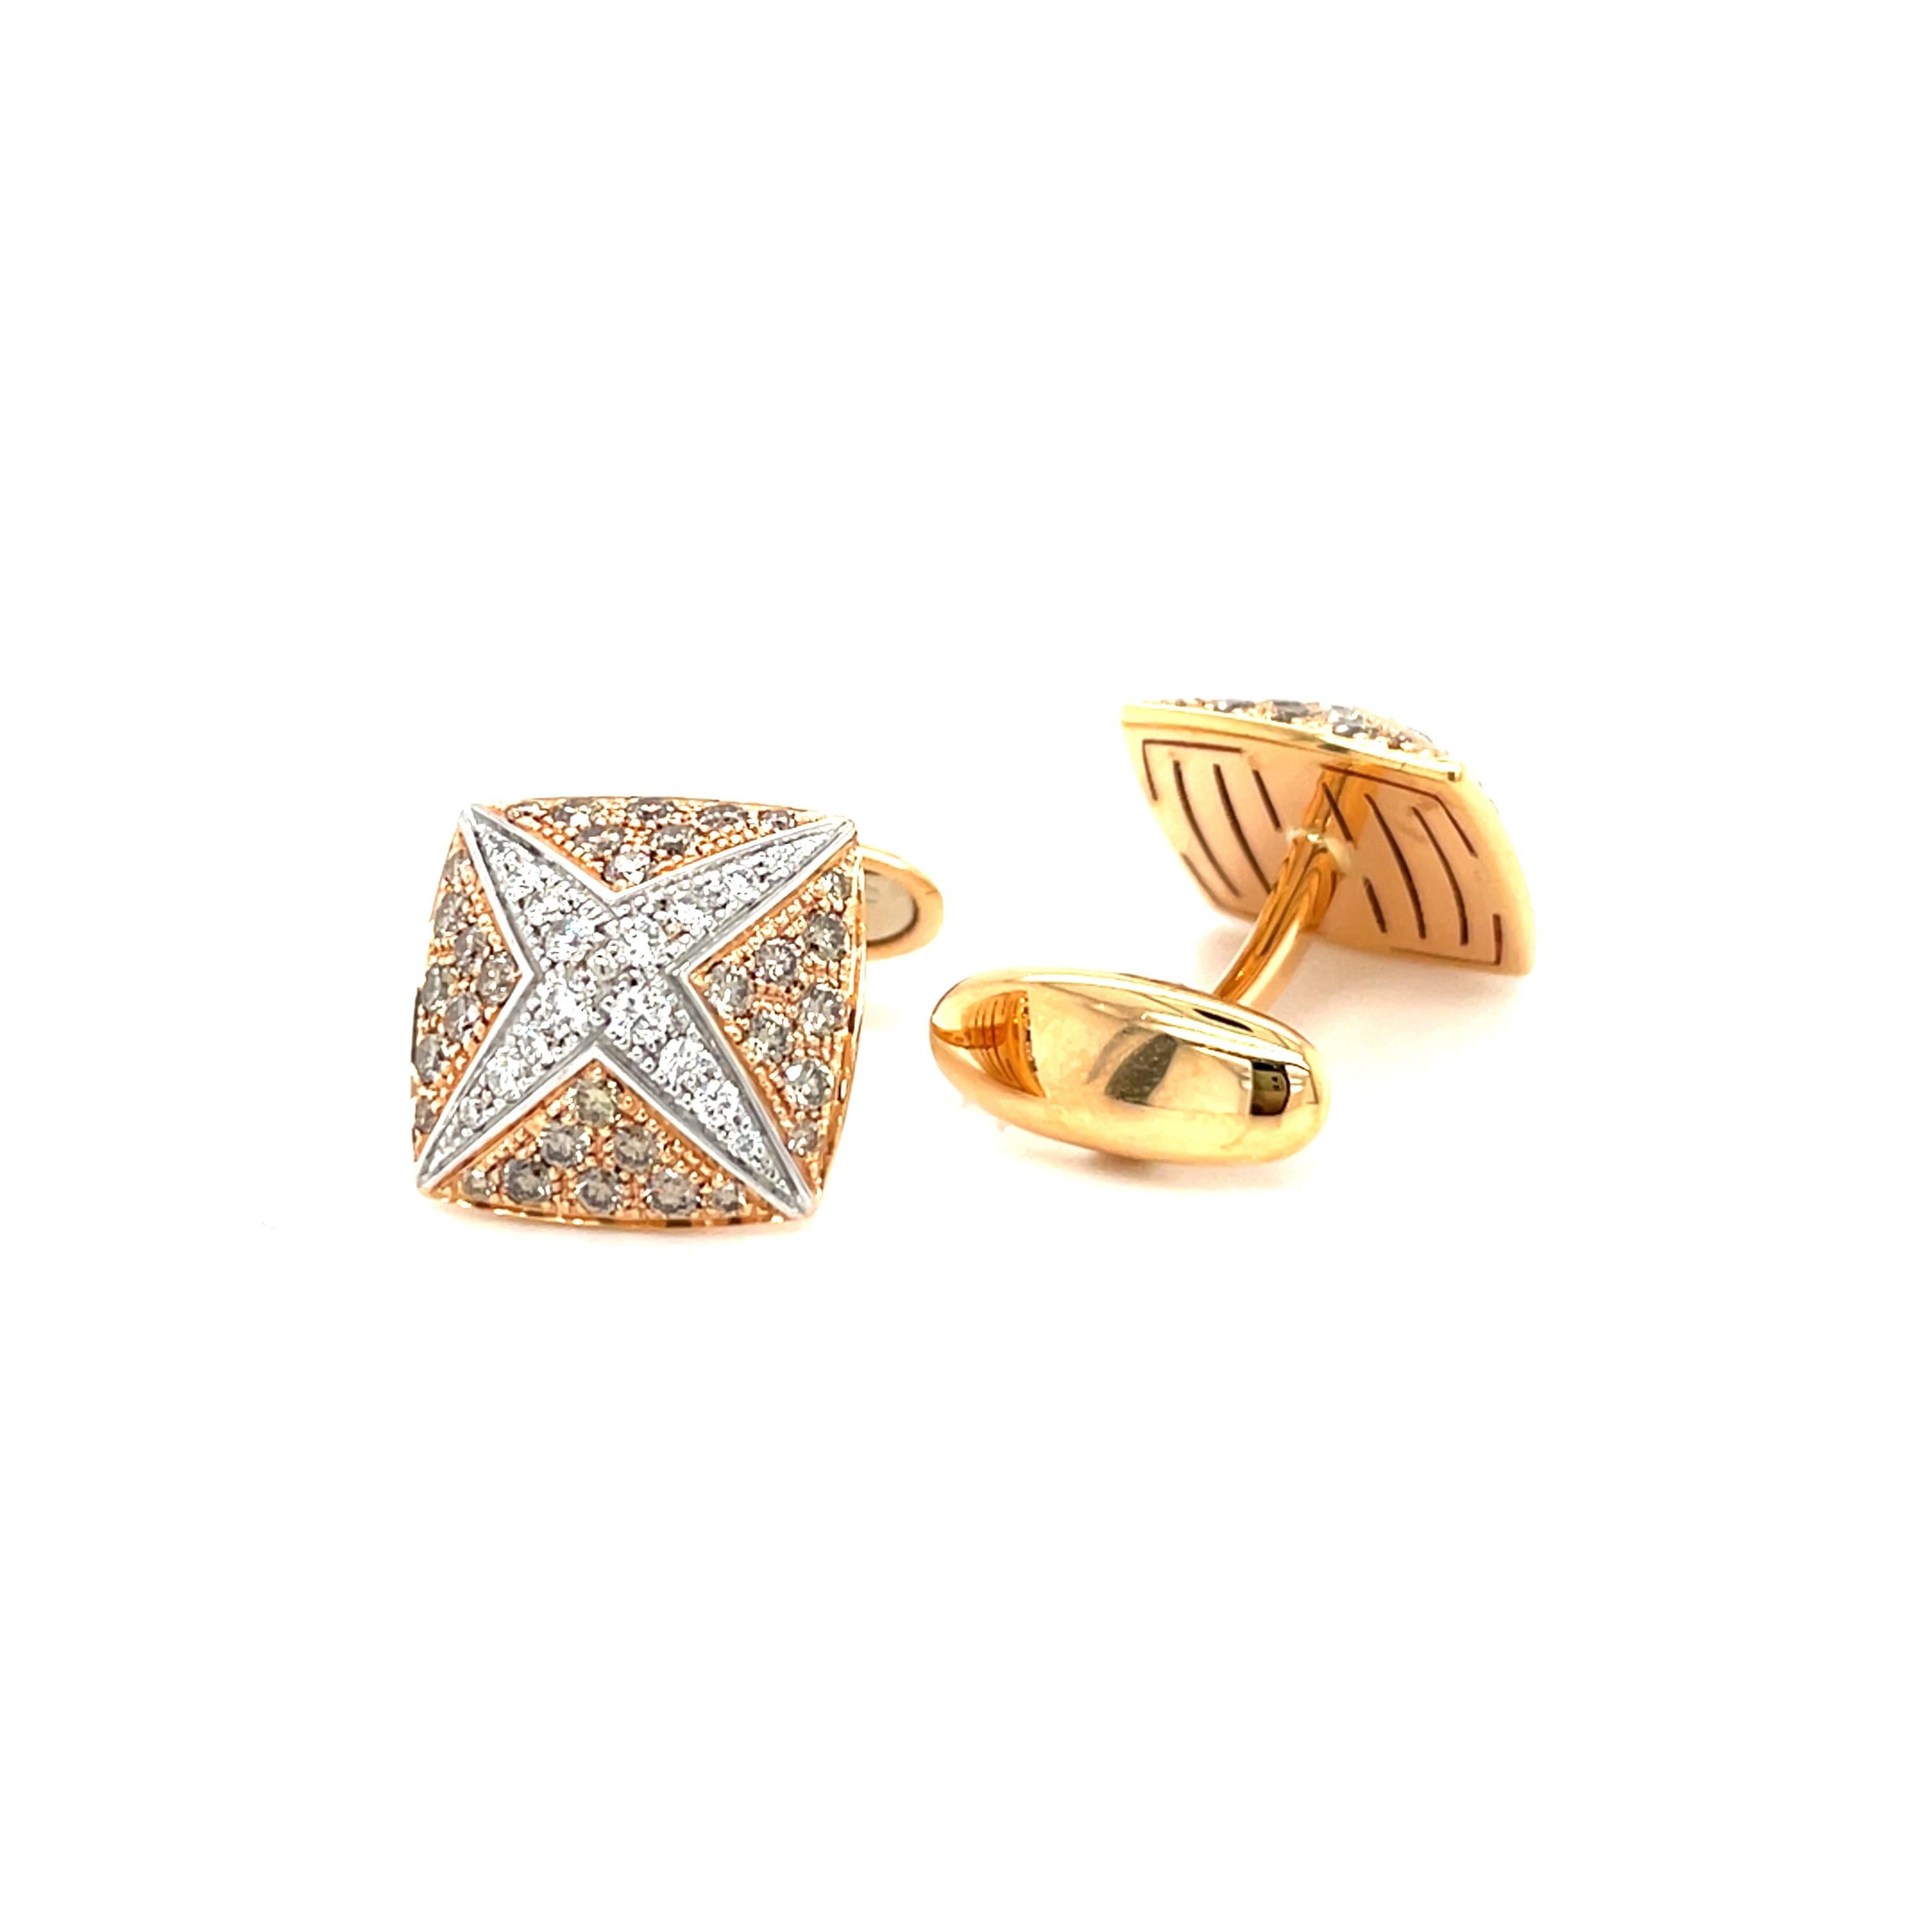 Diese  gelbgoldene Manschettenknöpfe sind von Men'S Collection'S. Diese Manschettenknöpfe sind mit Diamanten verziert G Farbe VS2 Klarheit. Die Gesamtmenge der Diamanten beträgt 0,54 Karat und die der braunen Diamanten 1,42 Karat. Die Abmessungen